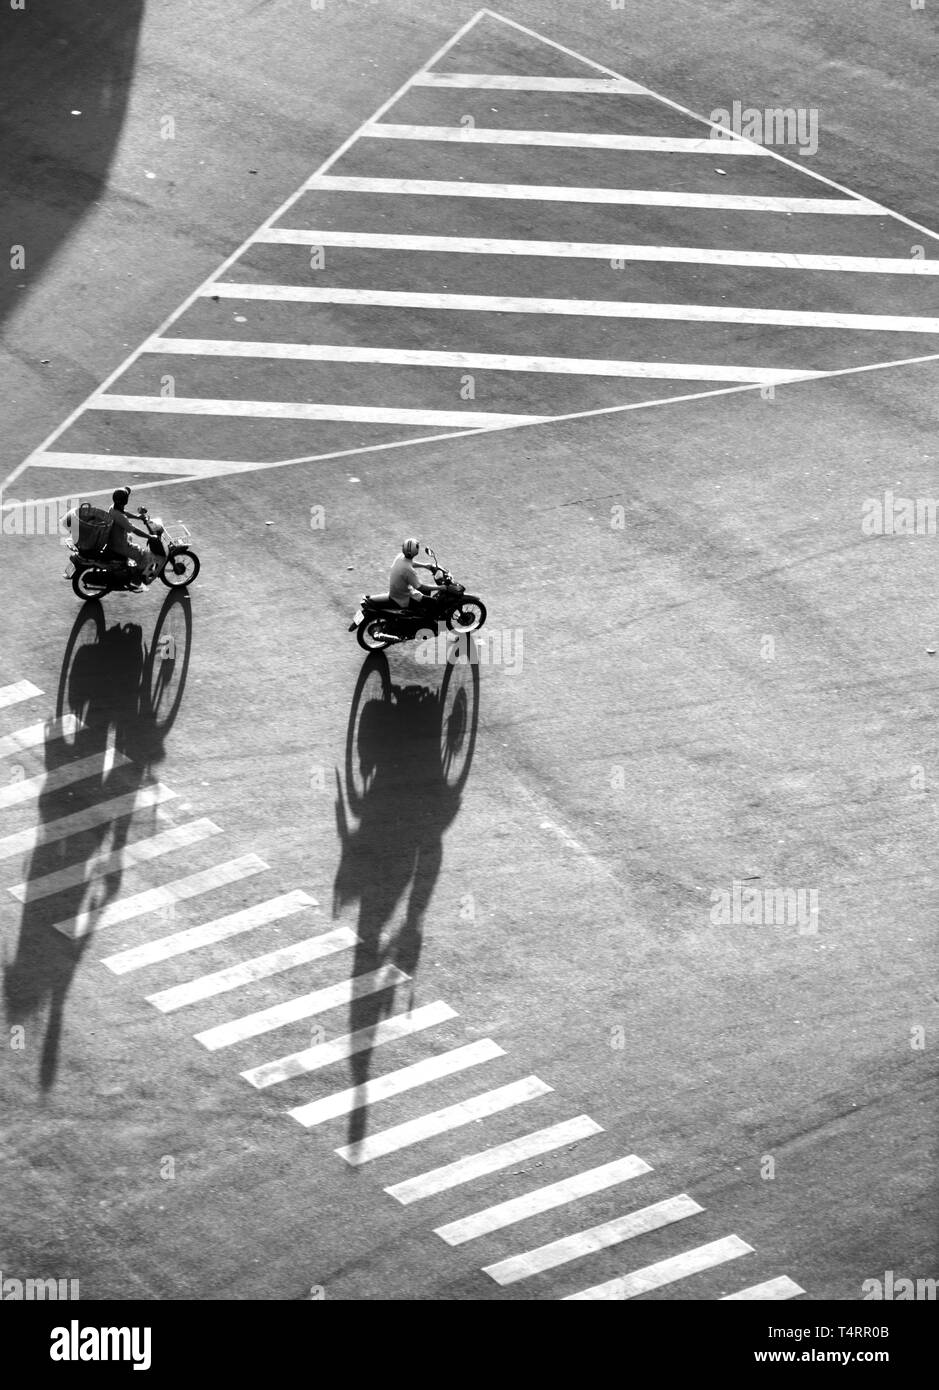 Erstaunlich hohes Ansehen Szene auf der Straße an den asiatischen Stadt, Gruppe von Vietnamesen Fahrmotorräder bewegen mit Schatten auf Fahrbahn machen Eindruck Form Stockfoto